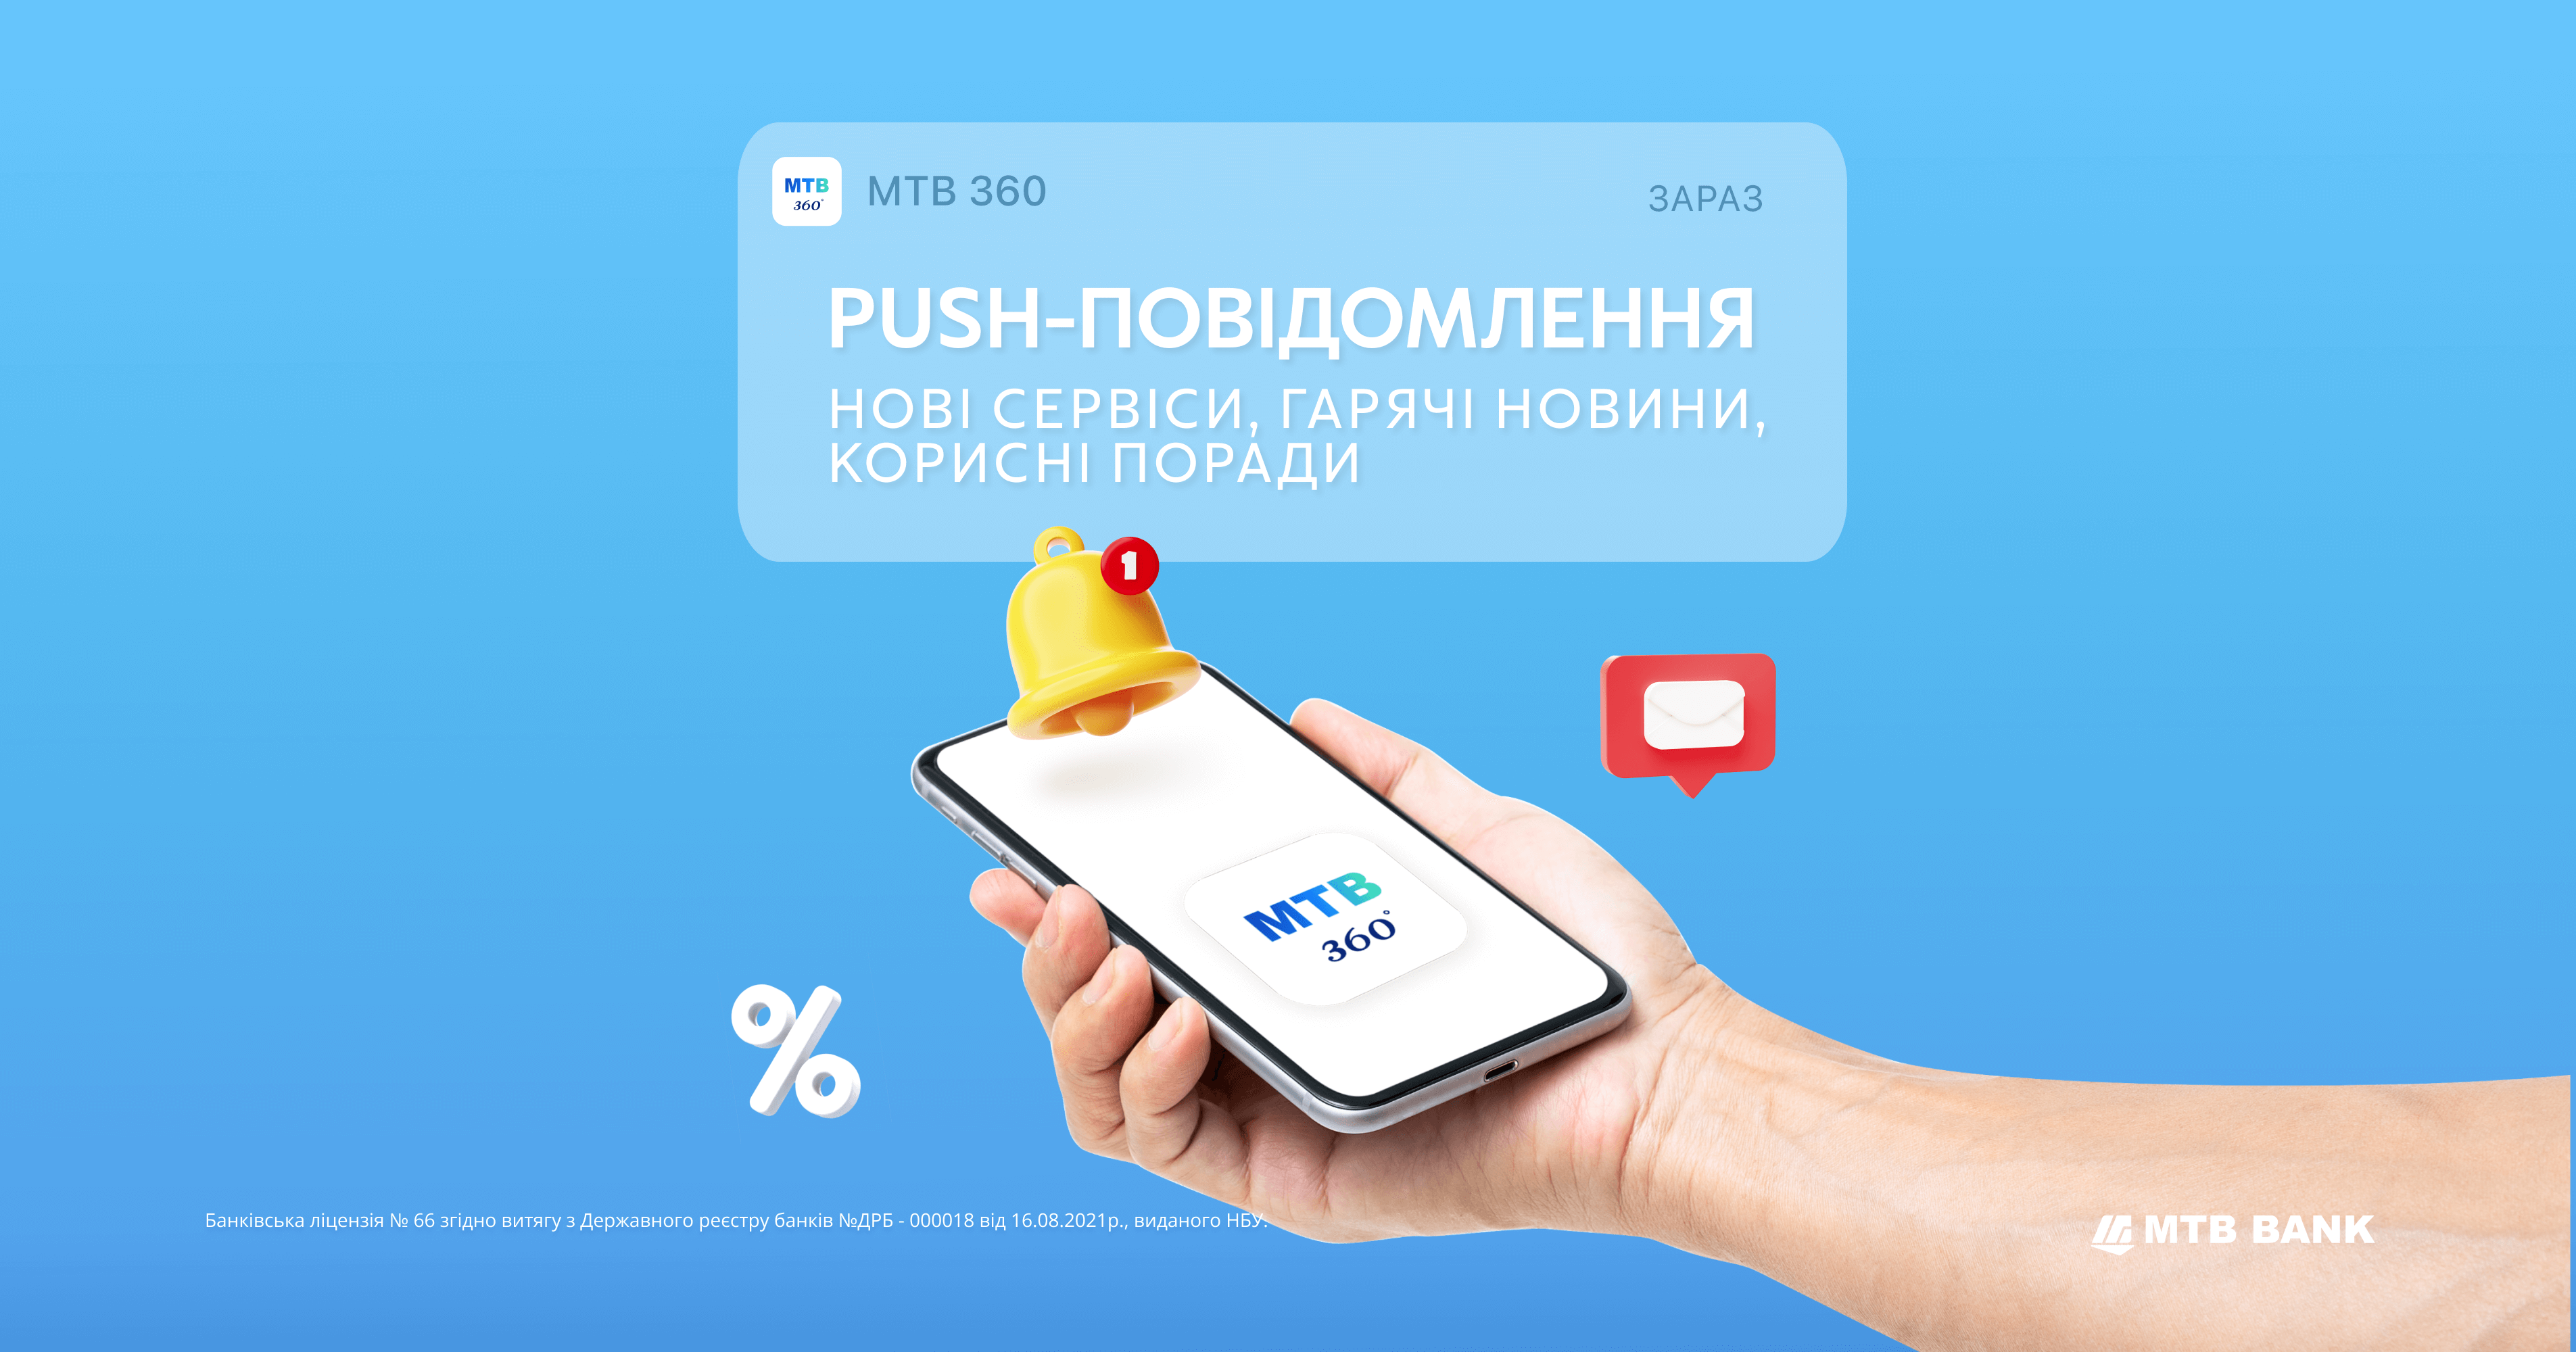 Ловіть персональні push-повідомлення від МТВ360 - фото - mtb.ua